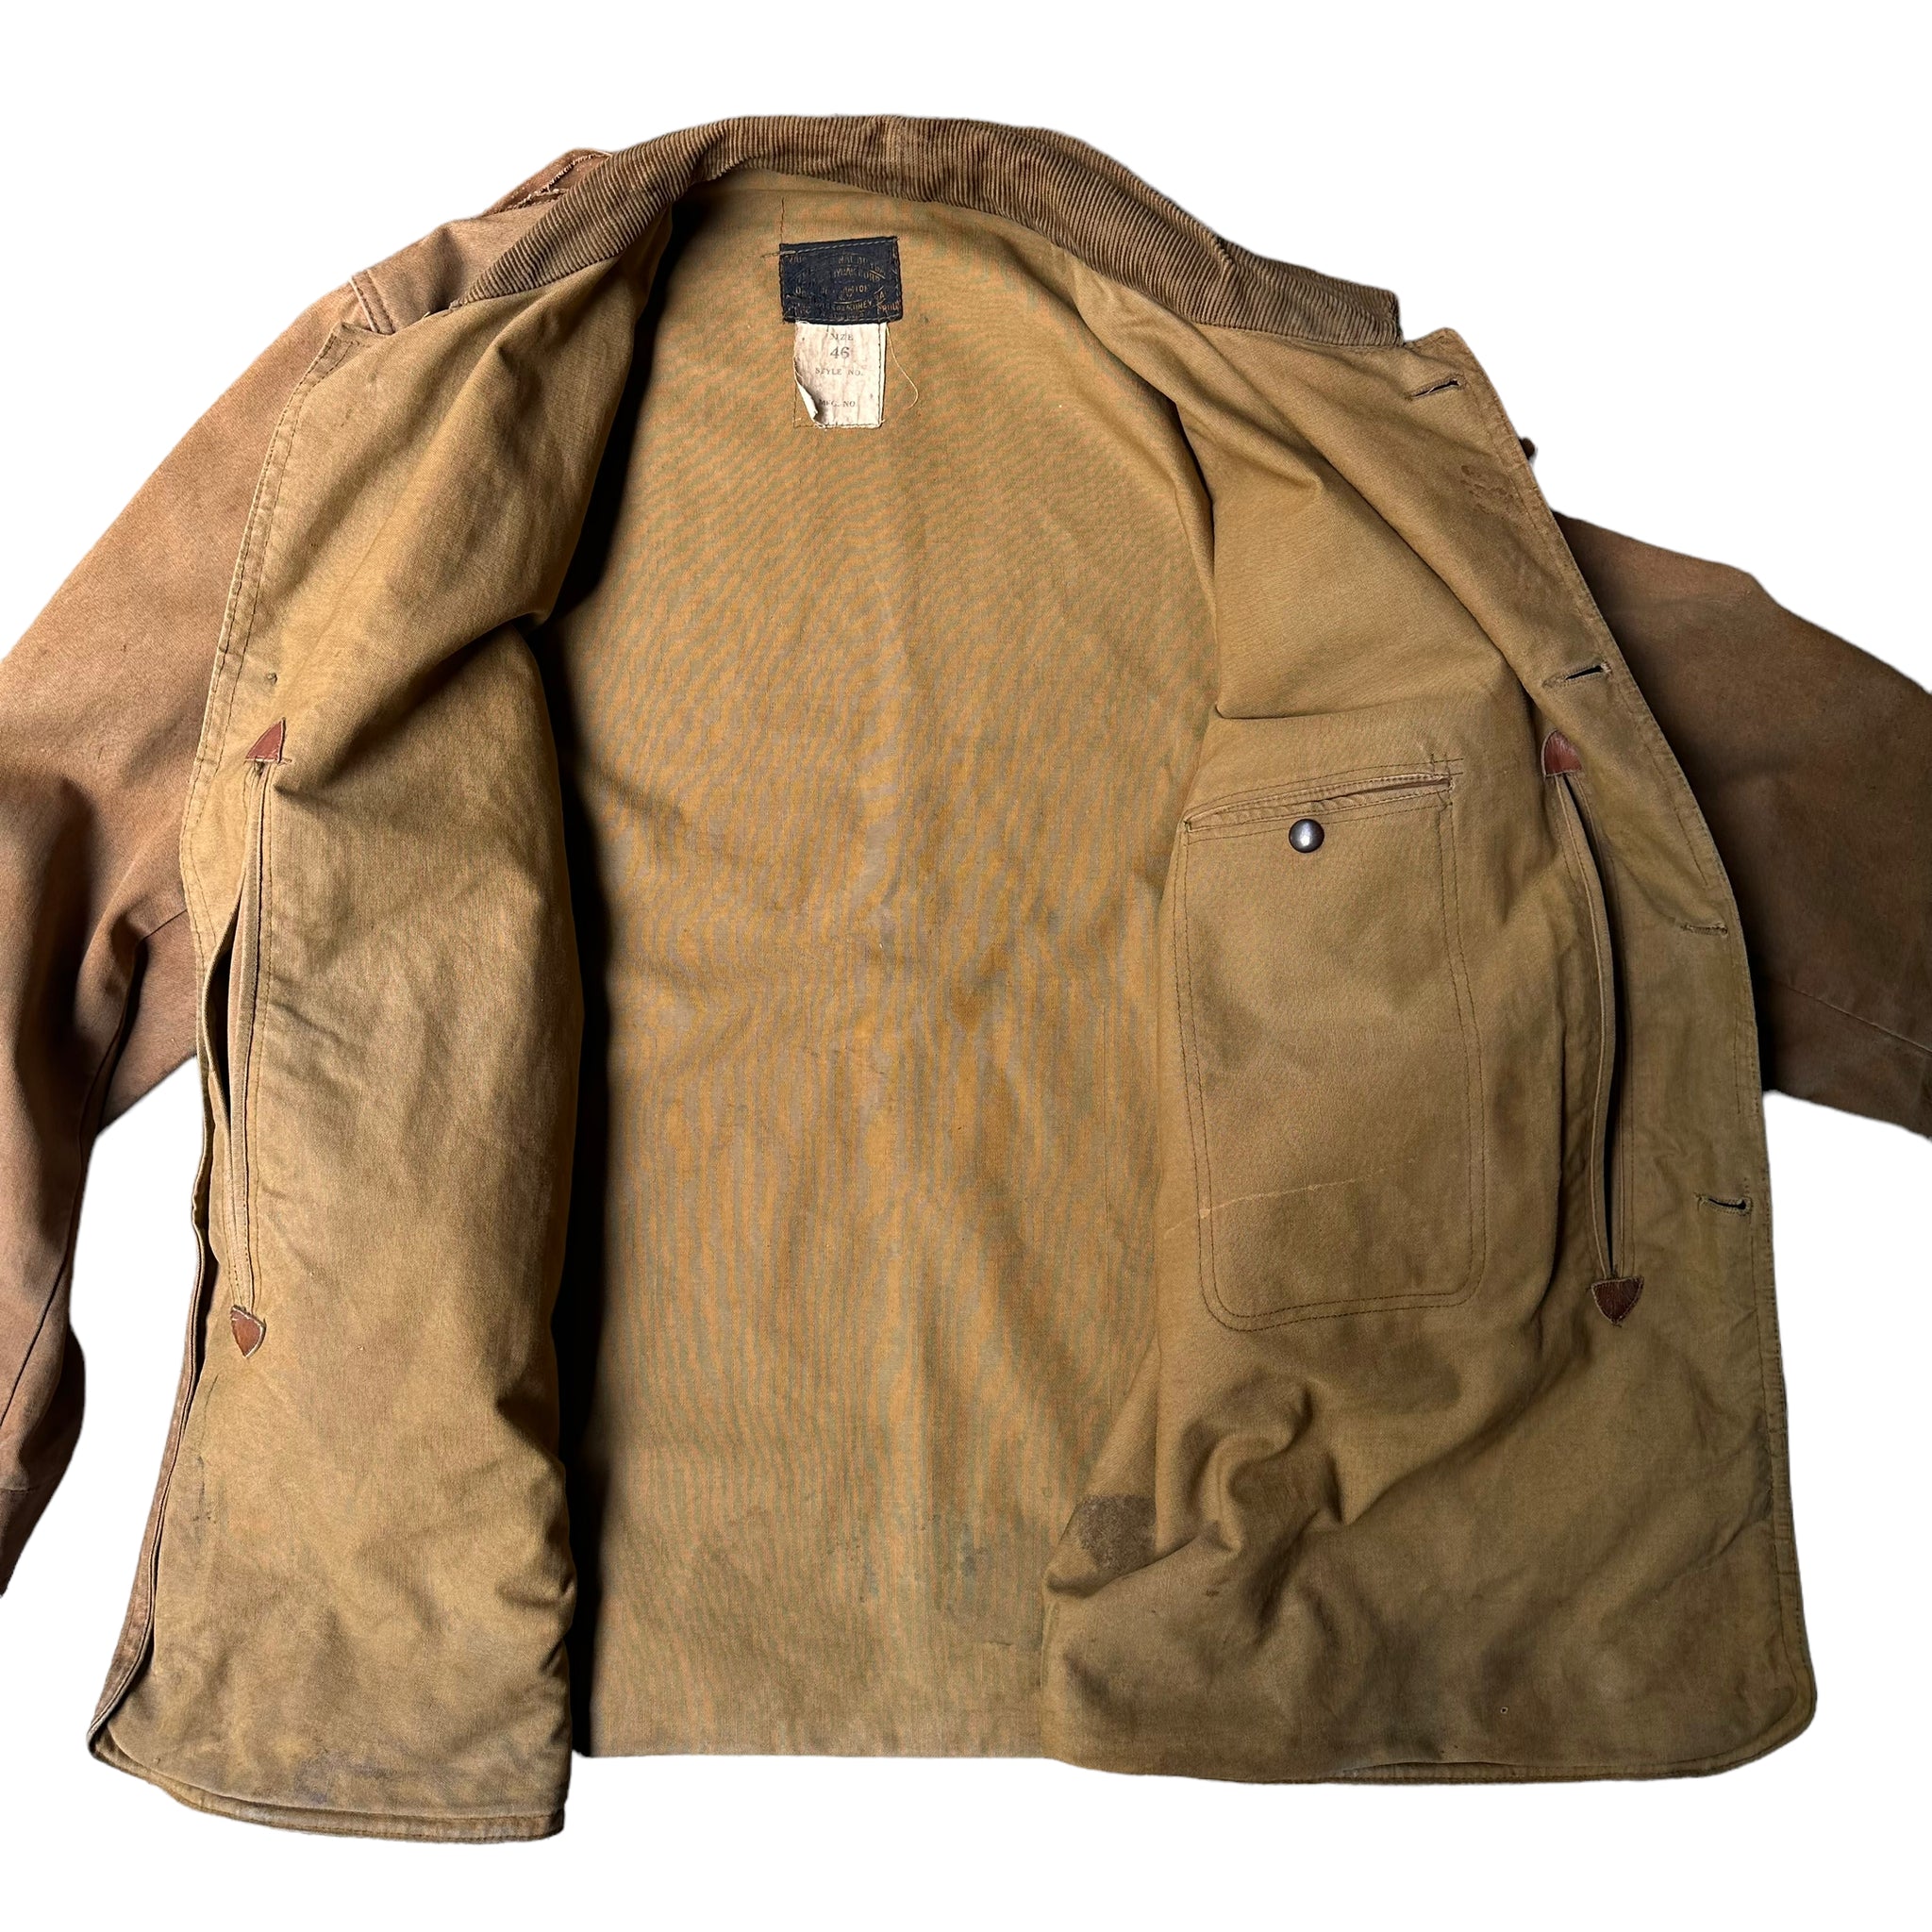 Early Drybak hunting jacket large